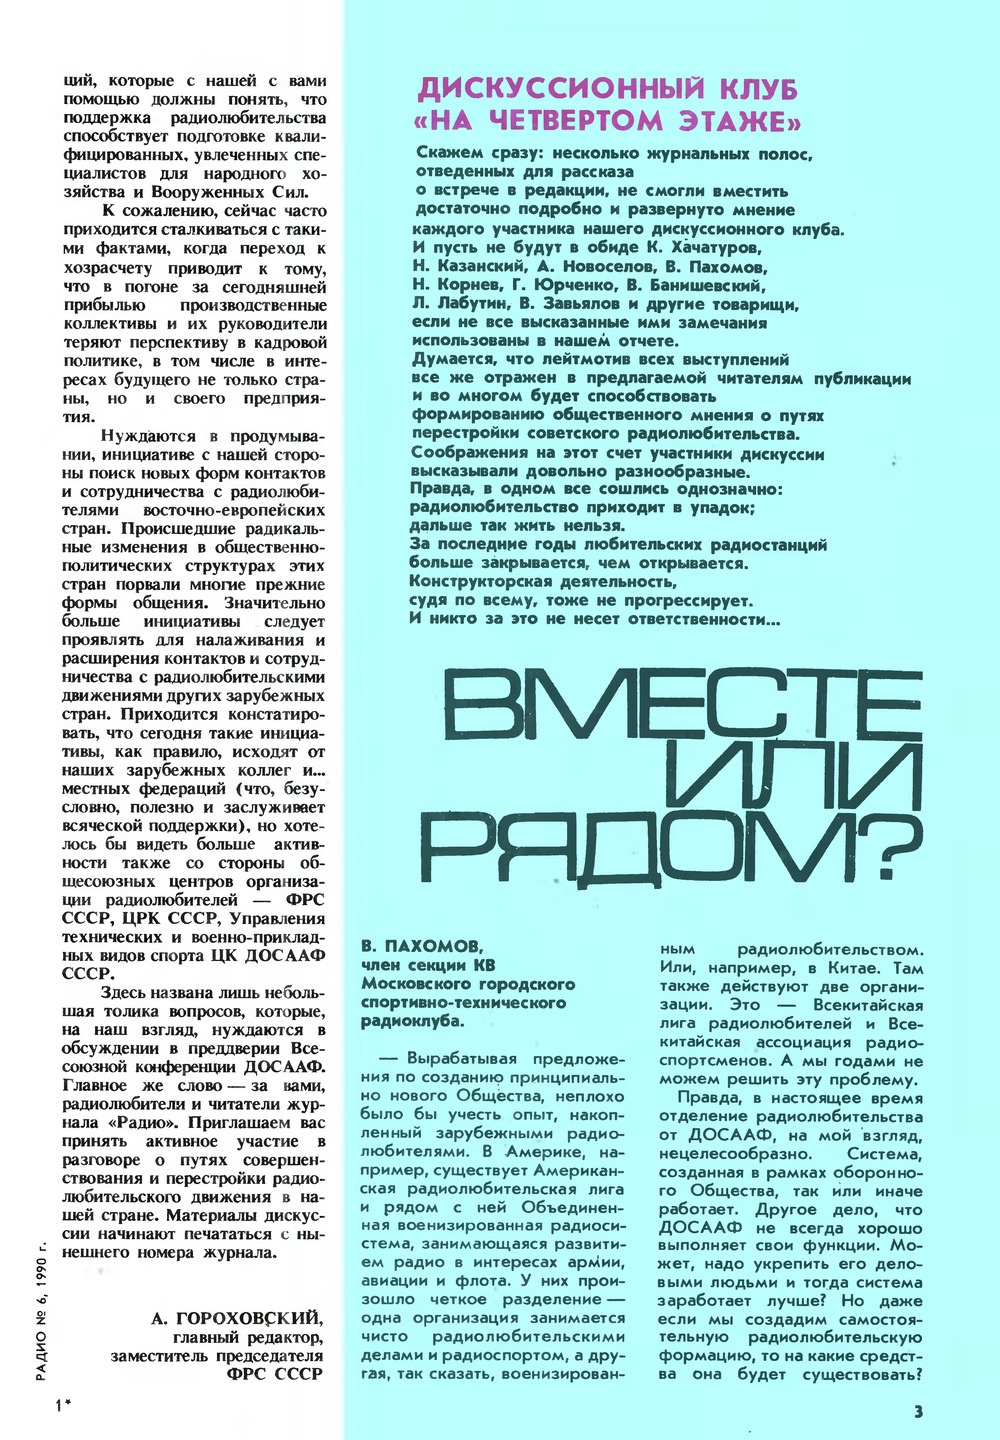 Стр. 3 журнала «Радио» № 6 за 1990 год